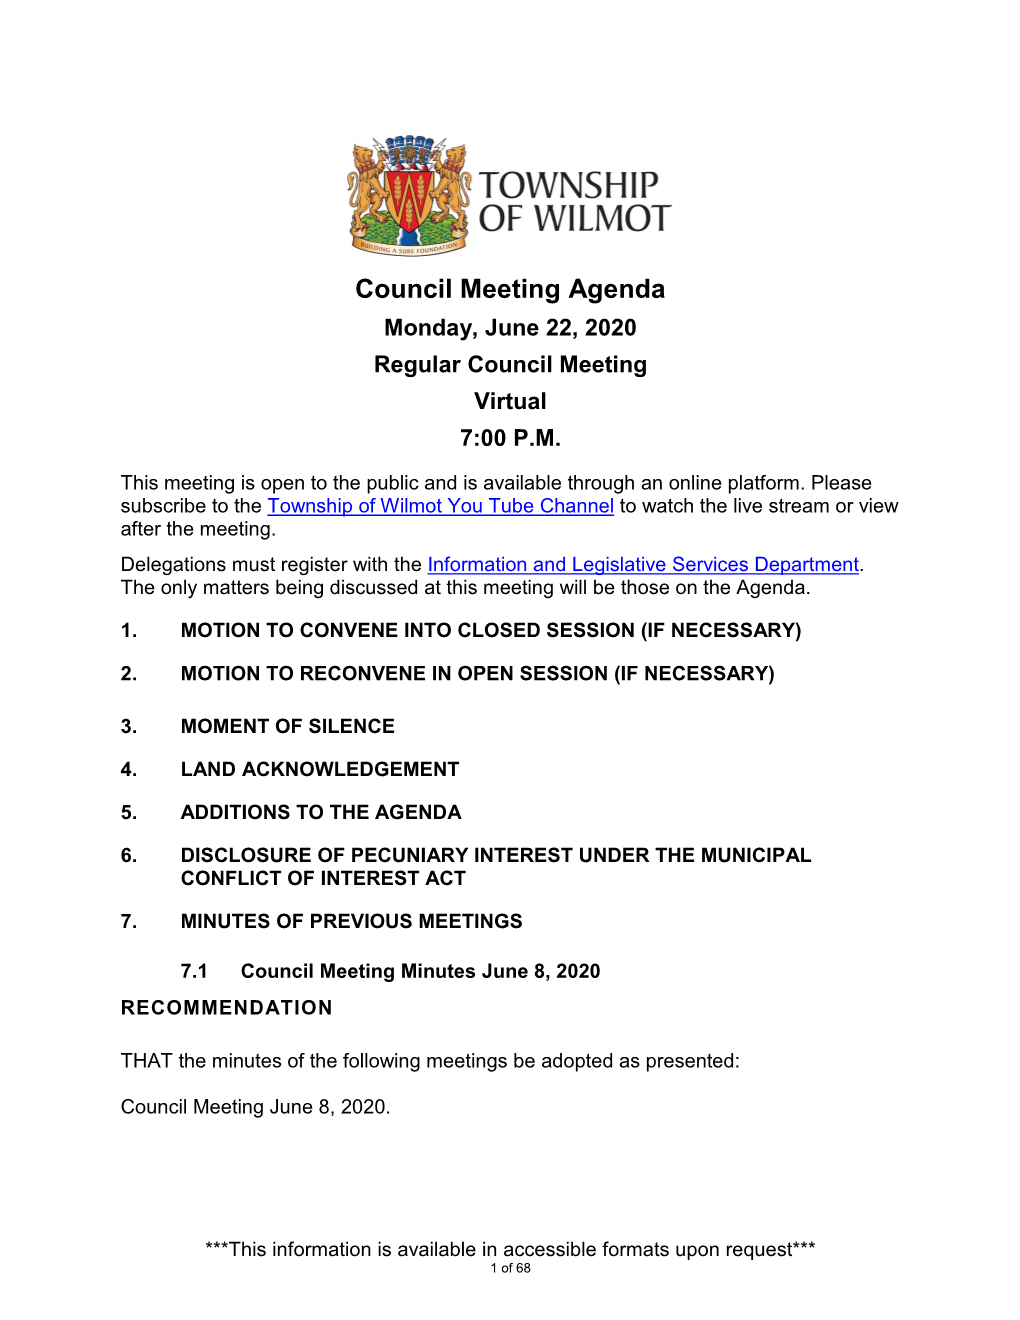 Council Meeting Agenda Monday, June 22, 2020 Regular Council Meeting Virtual 7:00 P.M